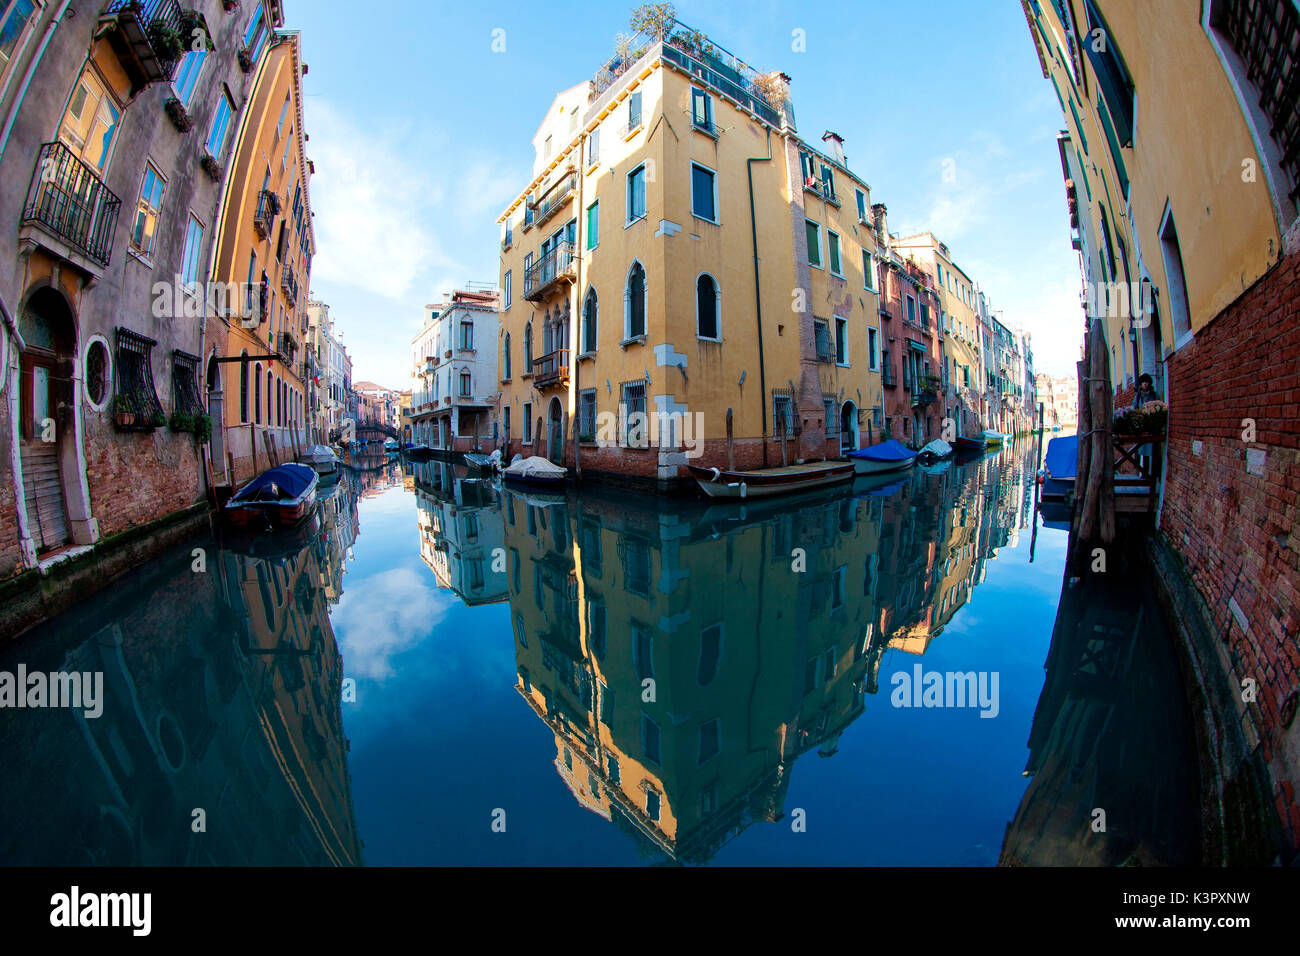 Quelques maisons typiques de Venise se reflétant dans les eaux calmes des canaux dans une claire journée d'hiver, Venise Vénétie Italie Europe Banque D'Images